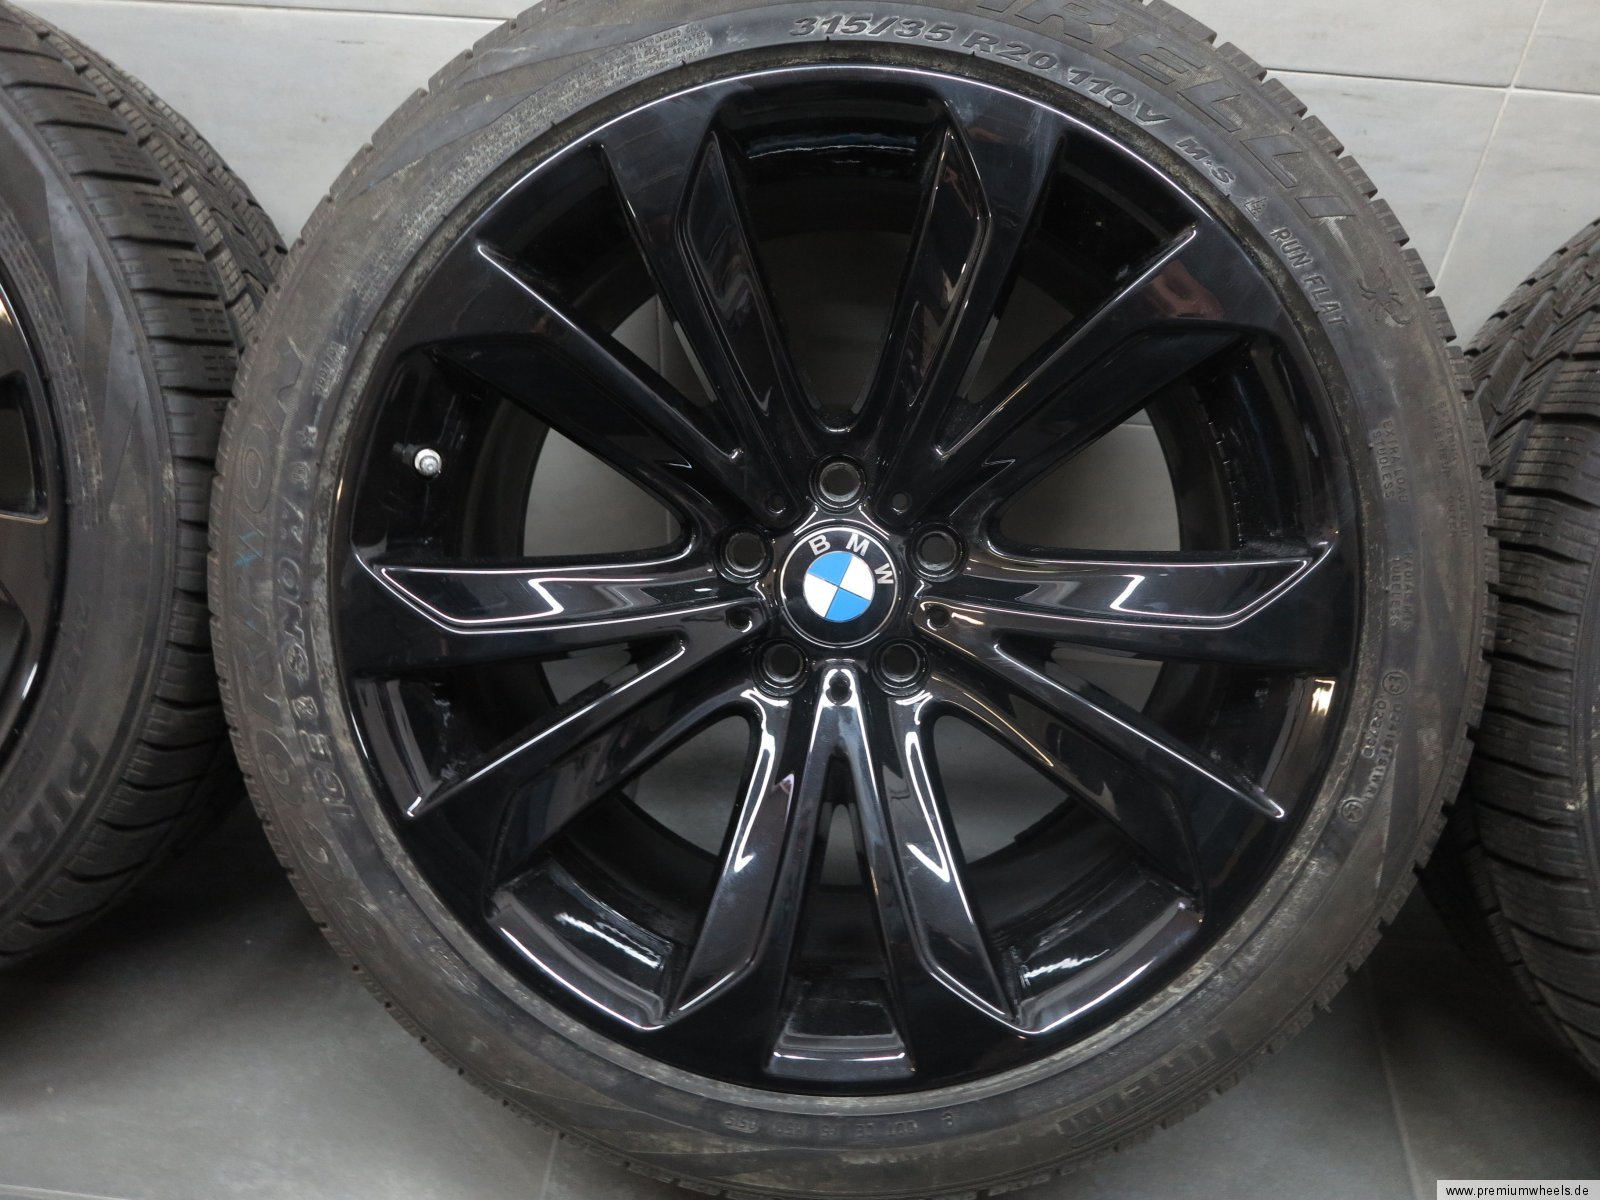 Zimní sada BMW X5 F15 STYLING 491 10x20 ET40 a 11x20 ET37 včetně zimních pneumatik 275/40 R20 a 315/35 R20 Pirelli RSC a čidel tlaku